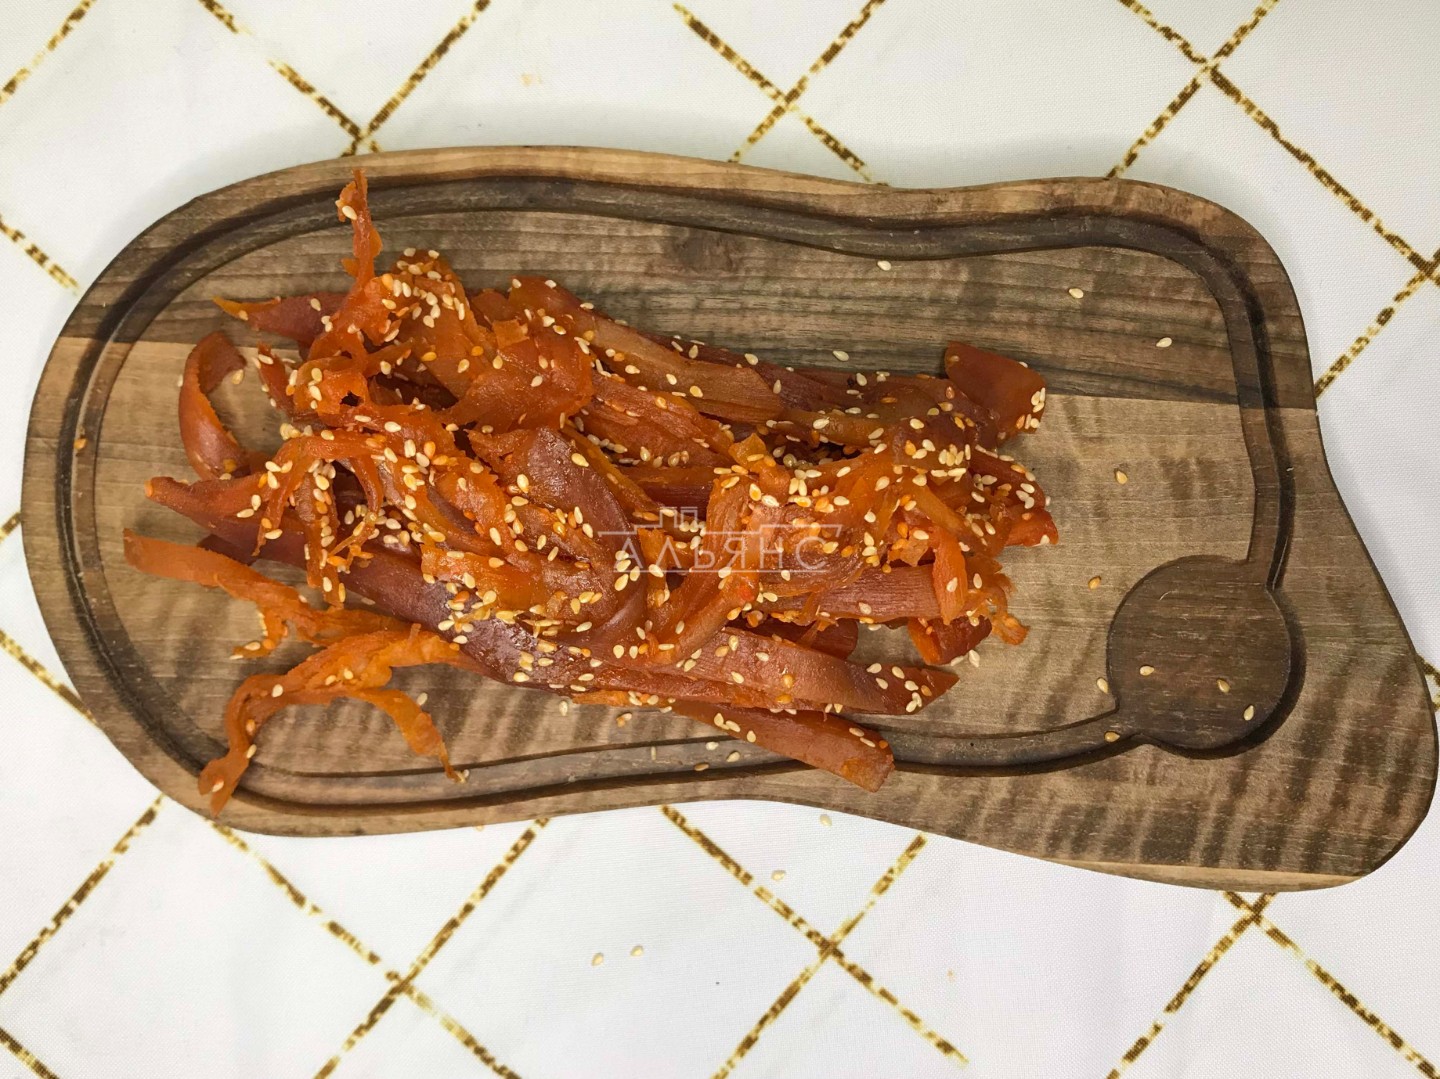 Кальмар со вкусом краба по-шанхайски в Северске